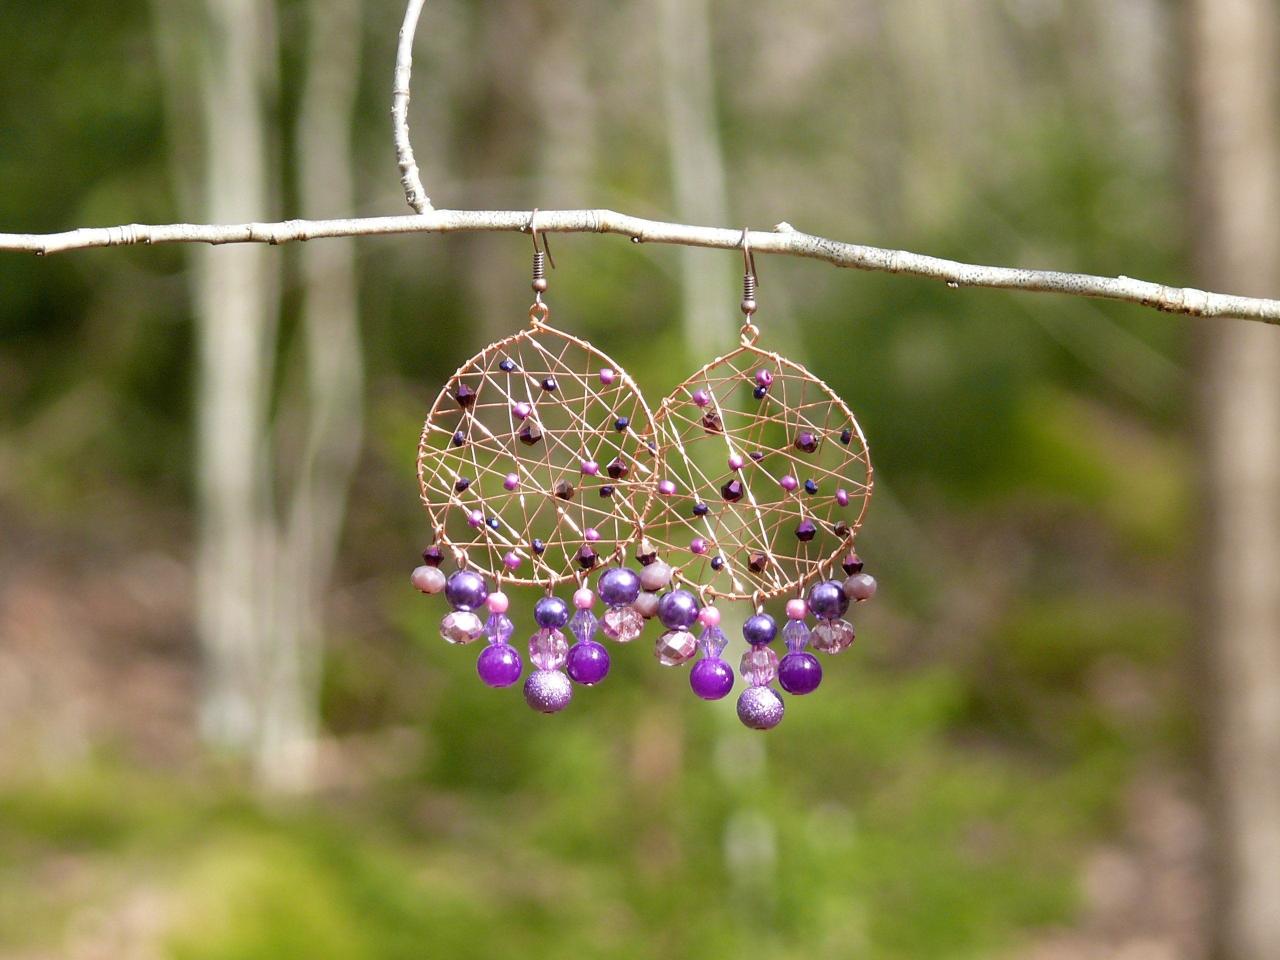 Purple Statement Earrings, Wire Wrapped Chandelier Earrings With Purple Beads, Large Copper Hoops With Dangles, Purple Boho Earrings